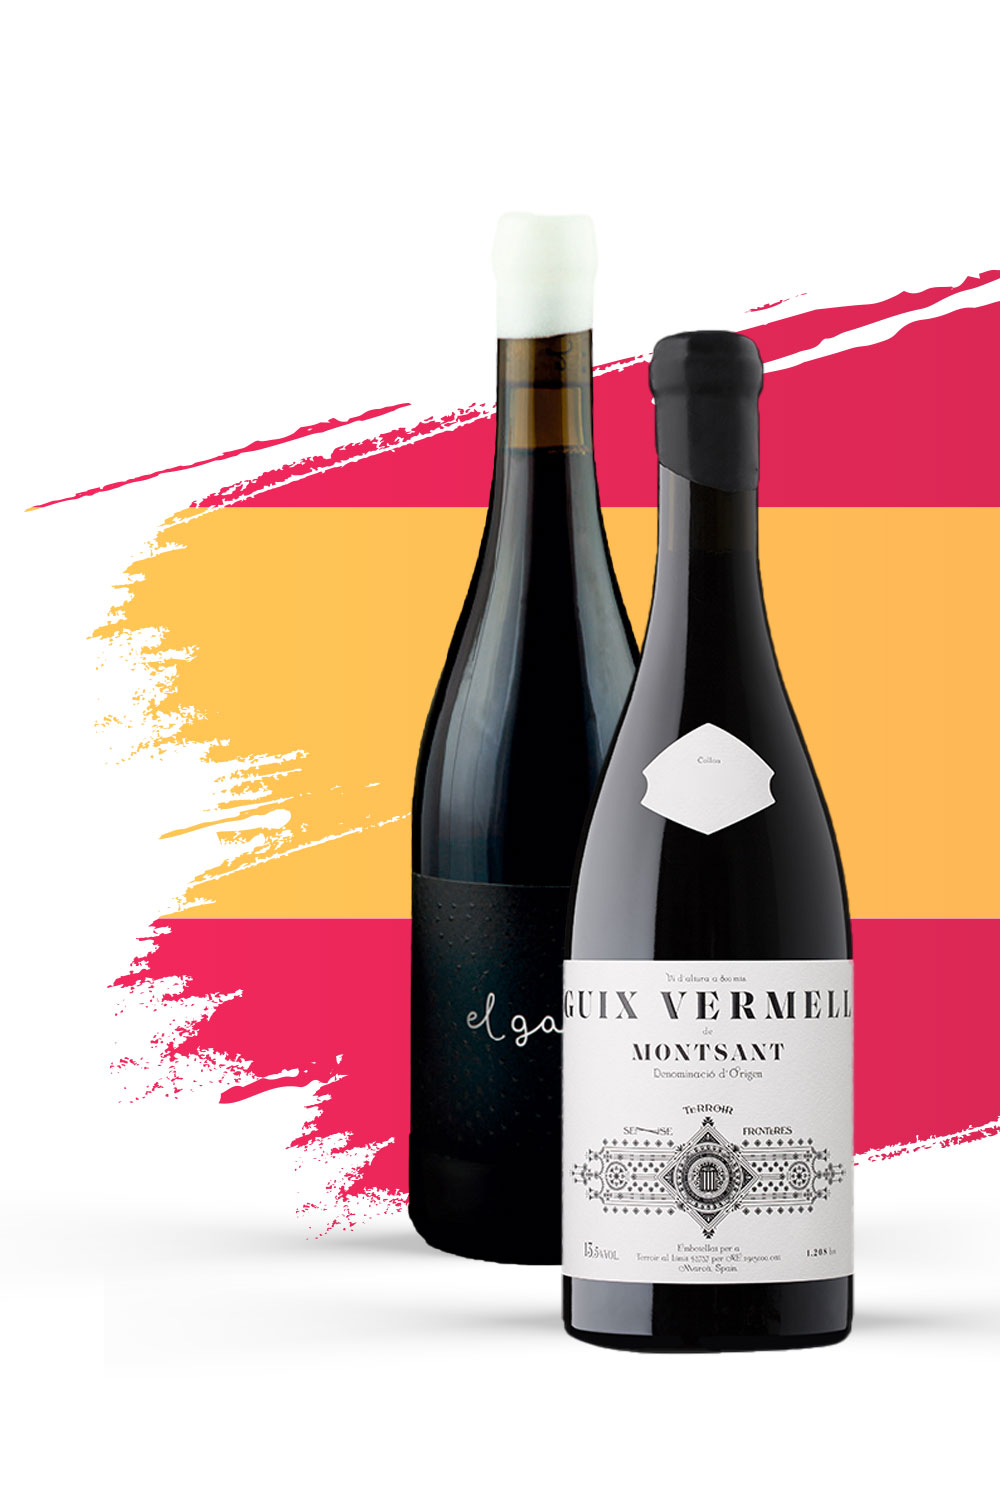 23 de Abril é dia para ler, e para beber os melhores vinhos de Espanha